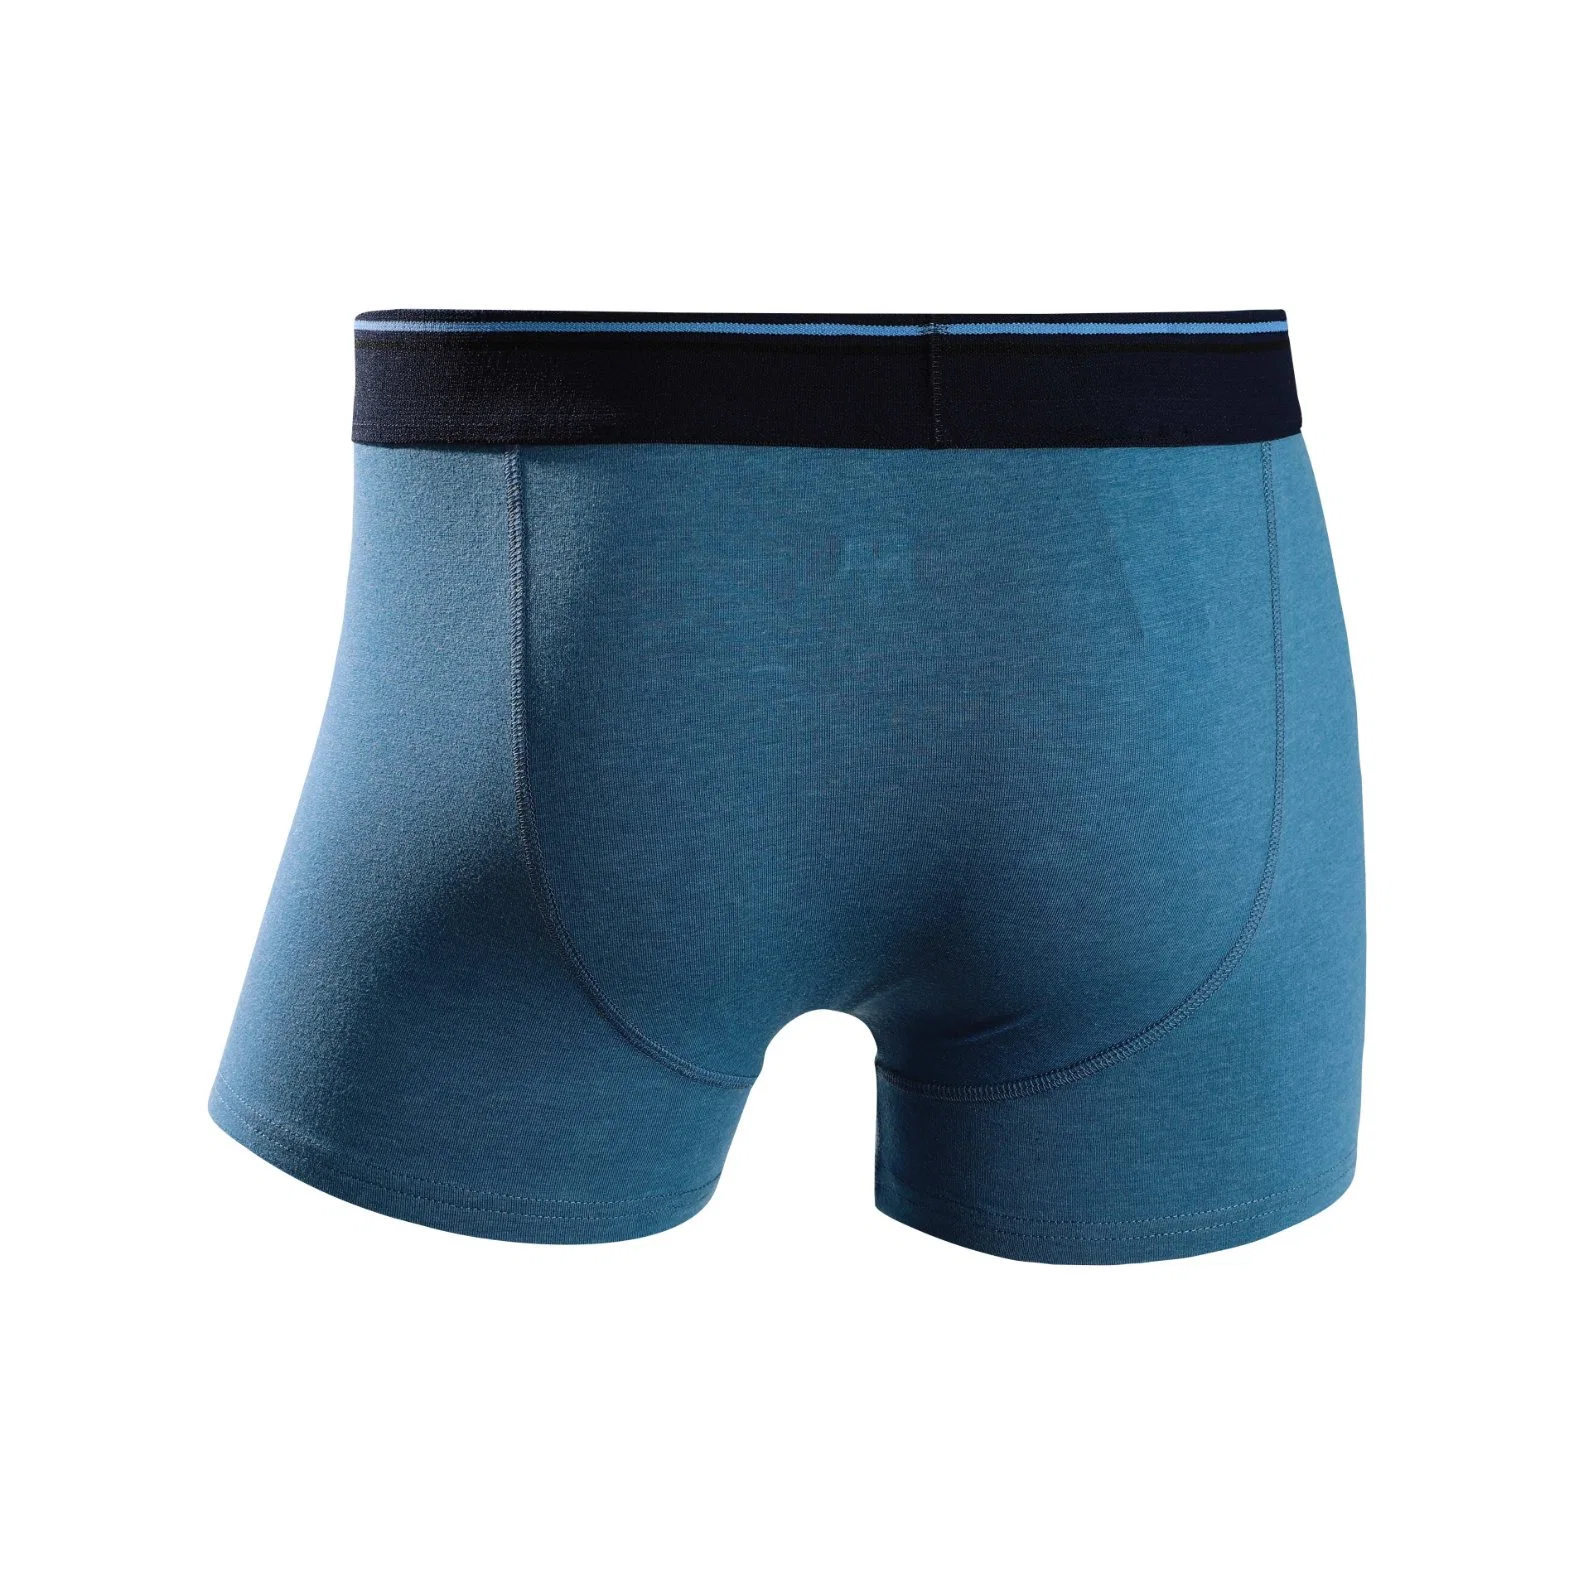 OEM Design Your Own Brand Logo Men Underwear Cotton Sport Man Boxer Briefs